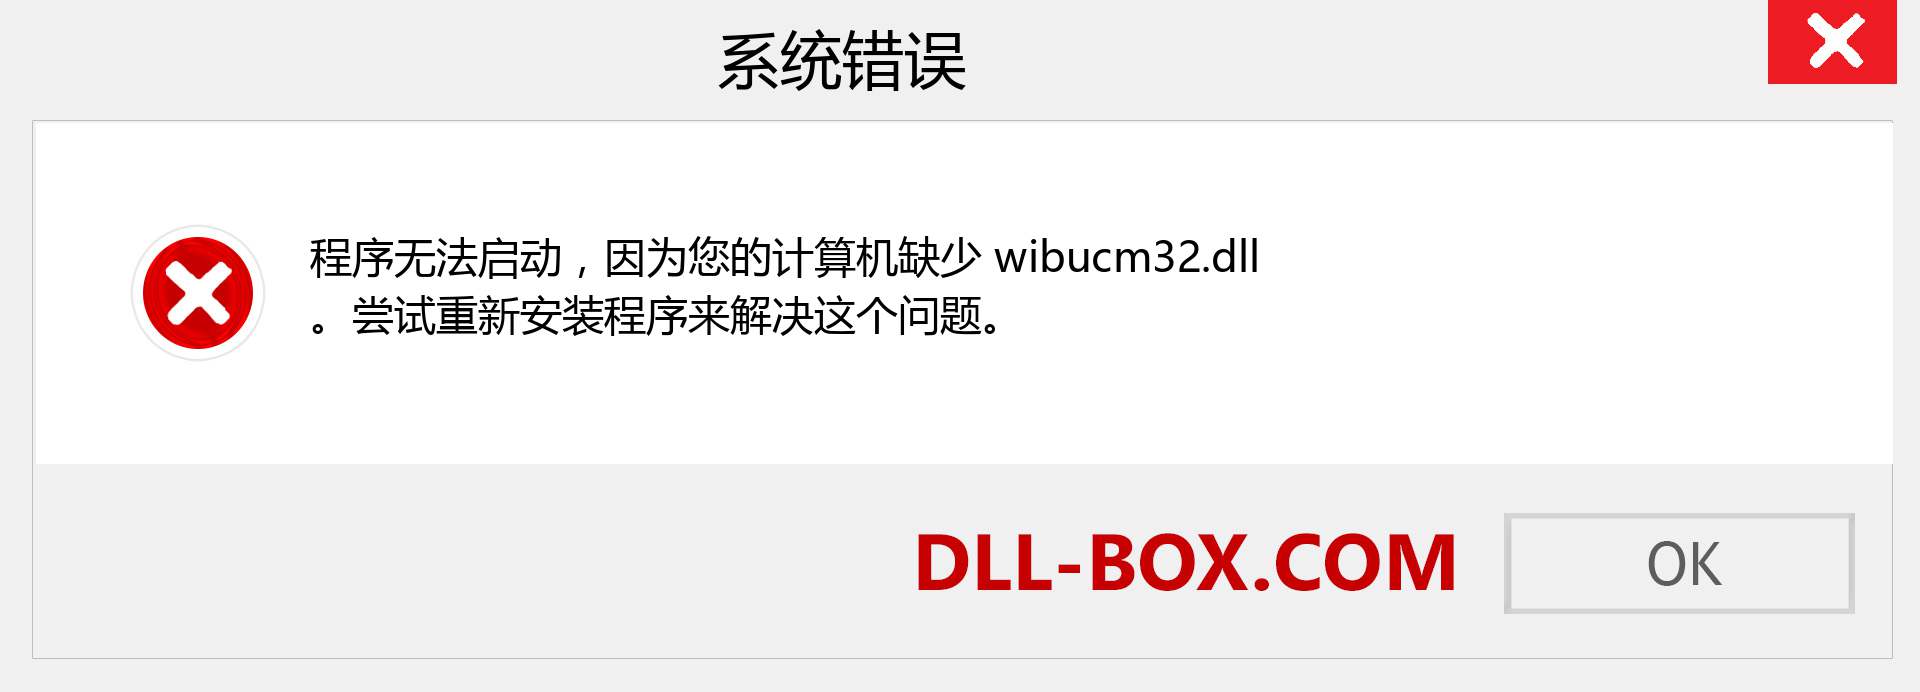 wibucm32.dll 文件丢失？。 适用于 Windows 7、8、10 的下载 - 修复 Windows、照片、图像上的 wibucm32 dll 丢失错误